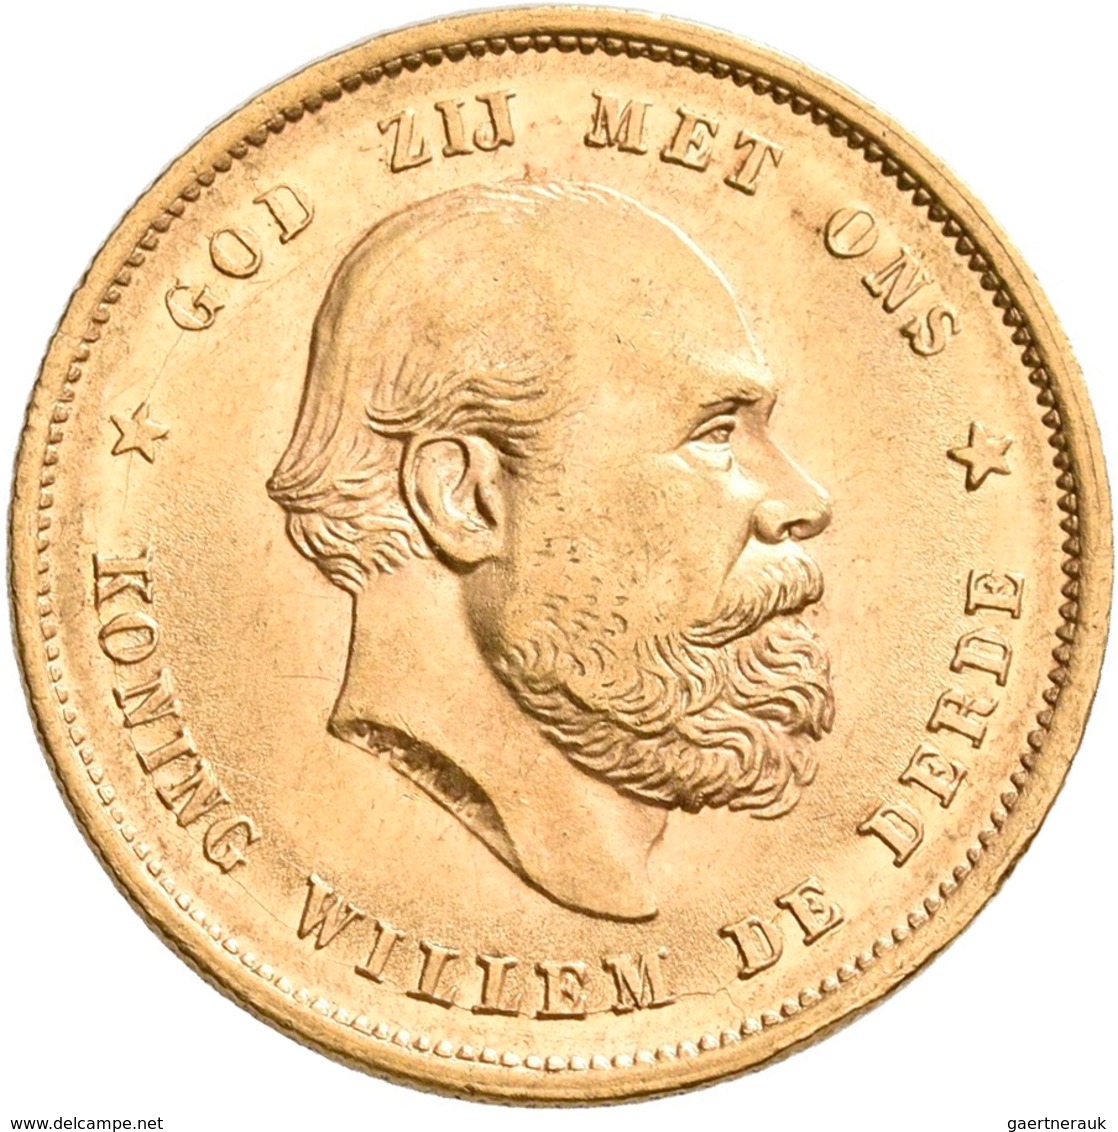 Niederlande - Anlagegold: Lot 4 Goldmünzen: 10 Gulden 1876 (2x), 1917 Und 1932. Jede Münze Wiegt 6,7 - Gold- & Silbermünzen